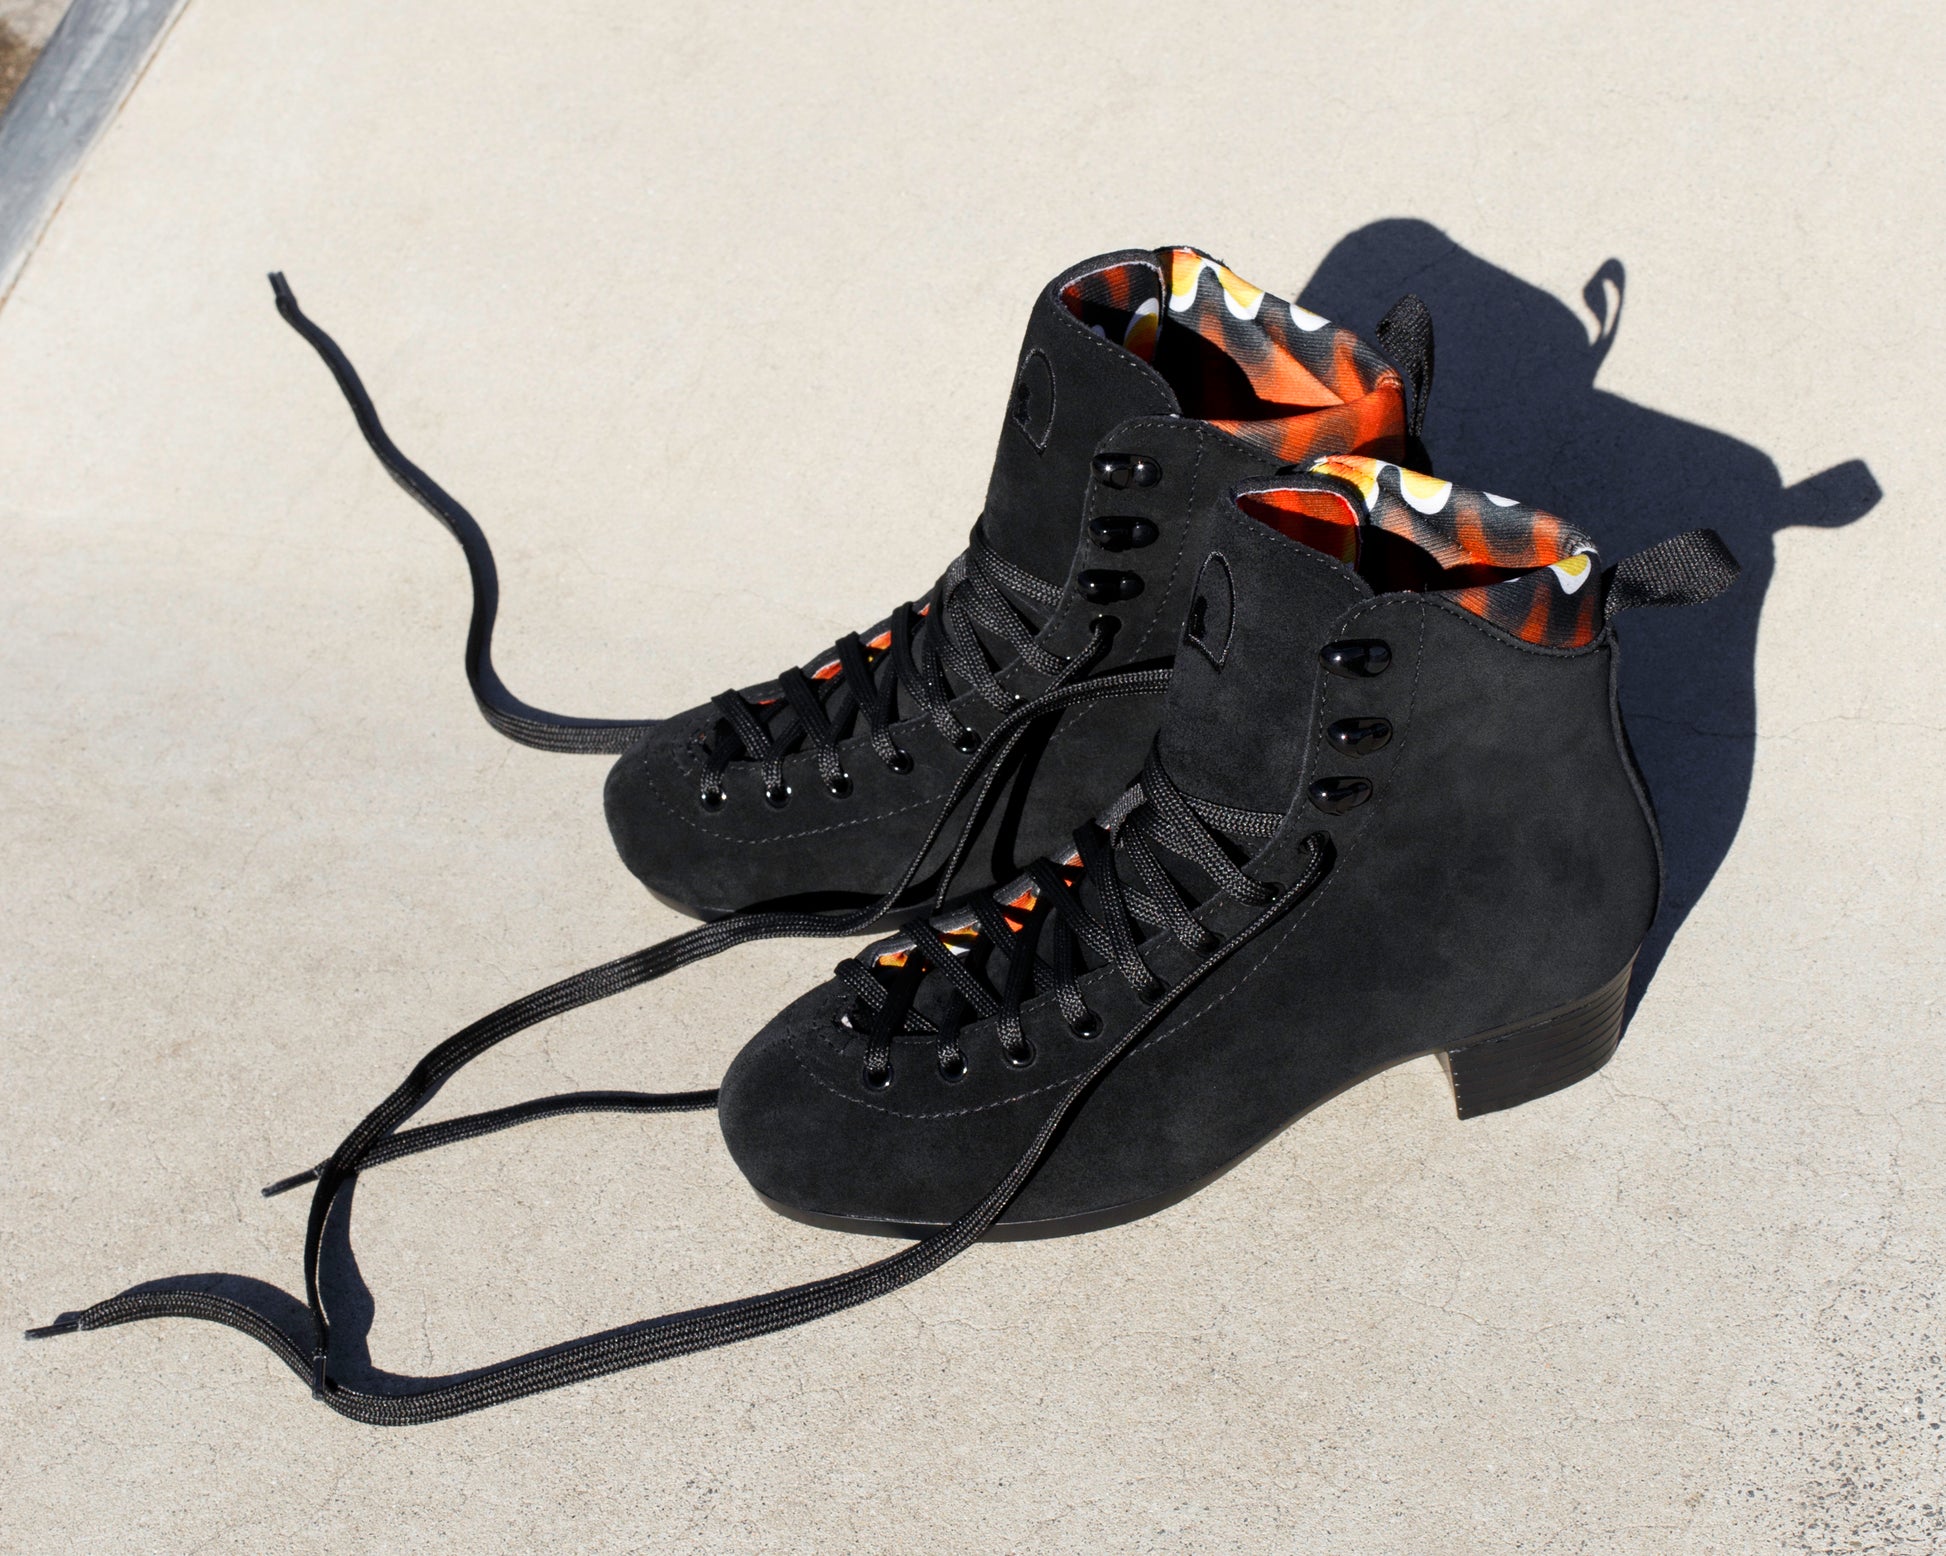 Chuffed Skates Pro Boot black roller skate